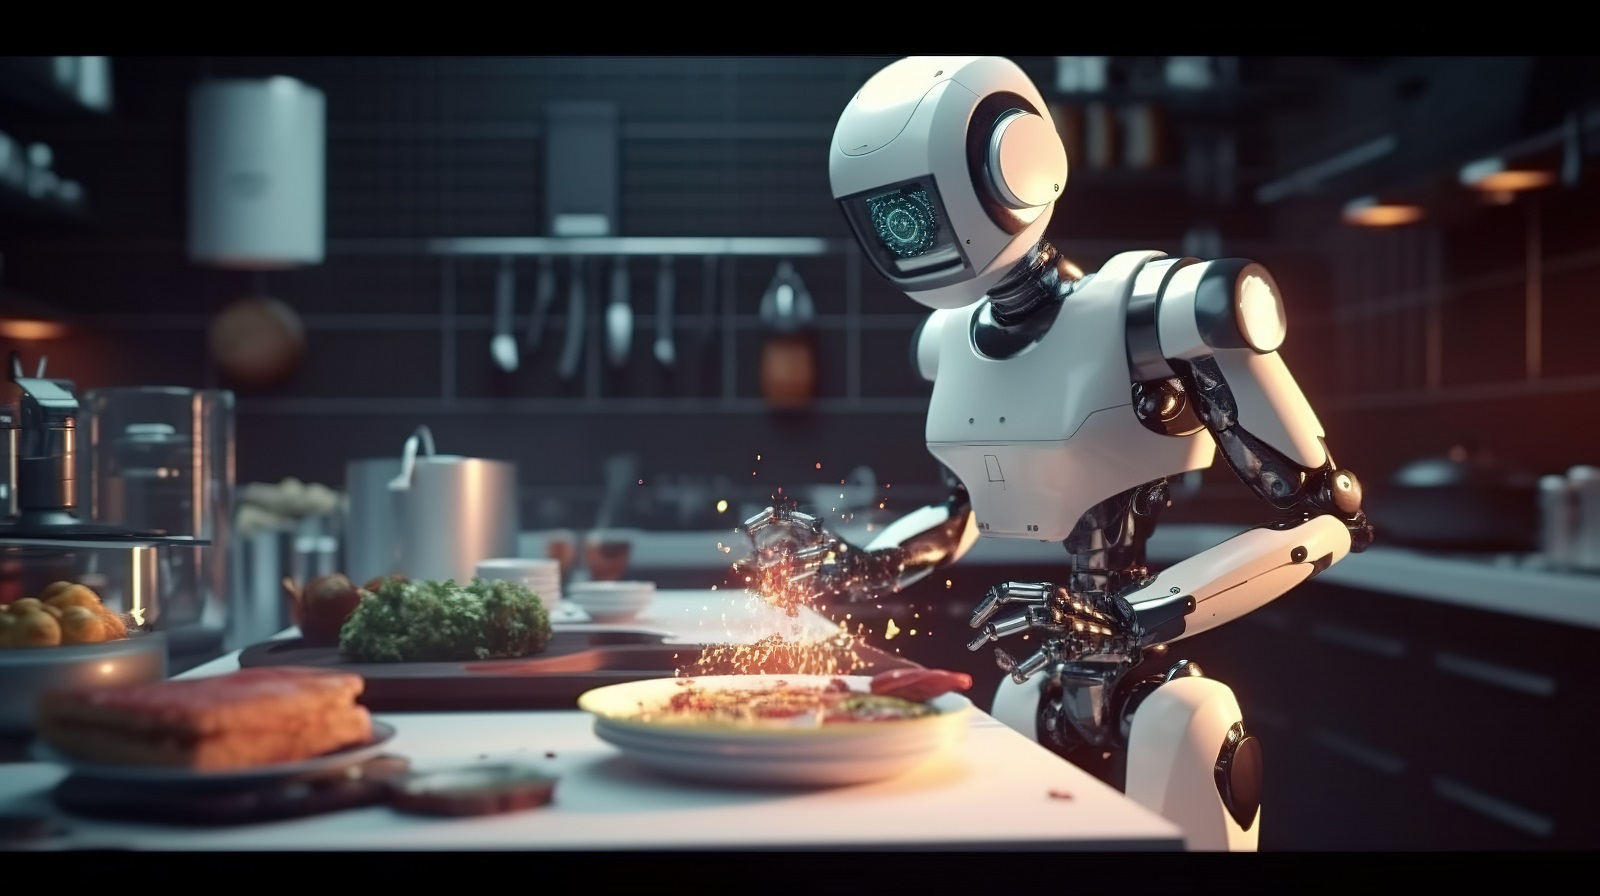 آیا با هوش مصنوعی زندگی انسان ها دچار تحول می شود؟ هوش مصنوعی در لوازم خانه و آشپزخانه